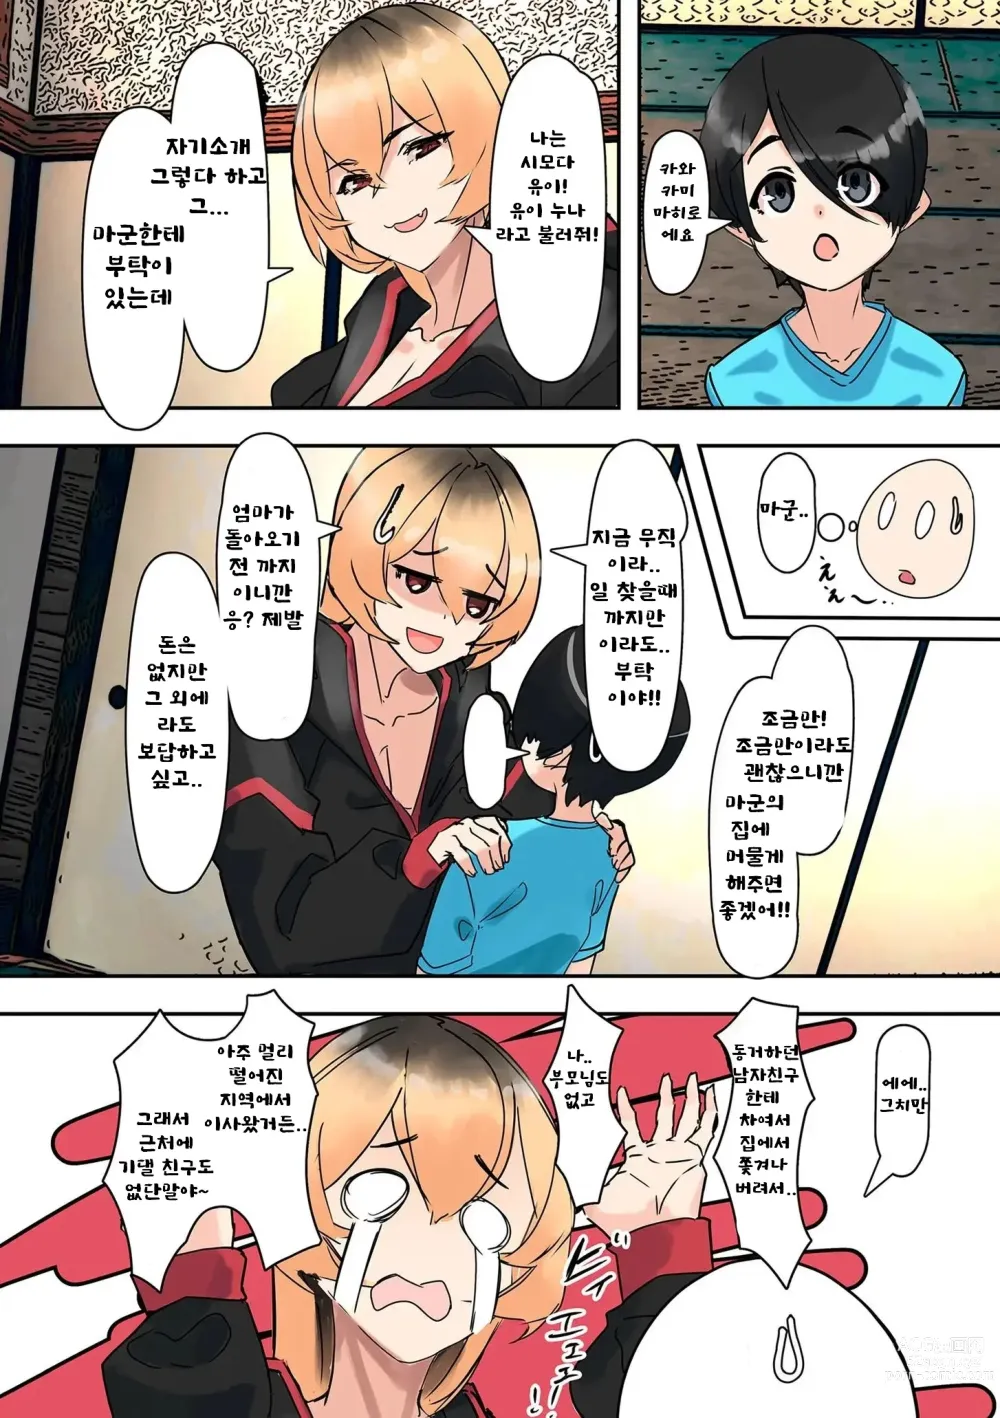 Page 6 of doujinshi 누나를 주우면...